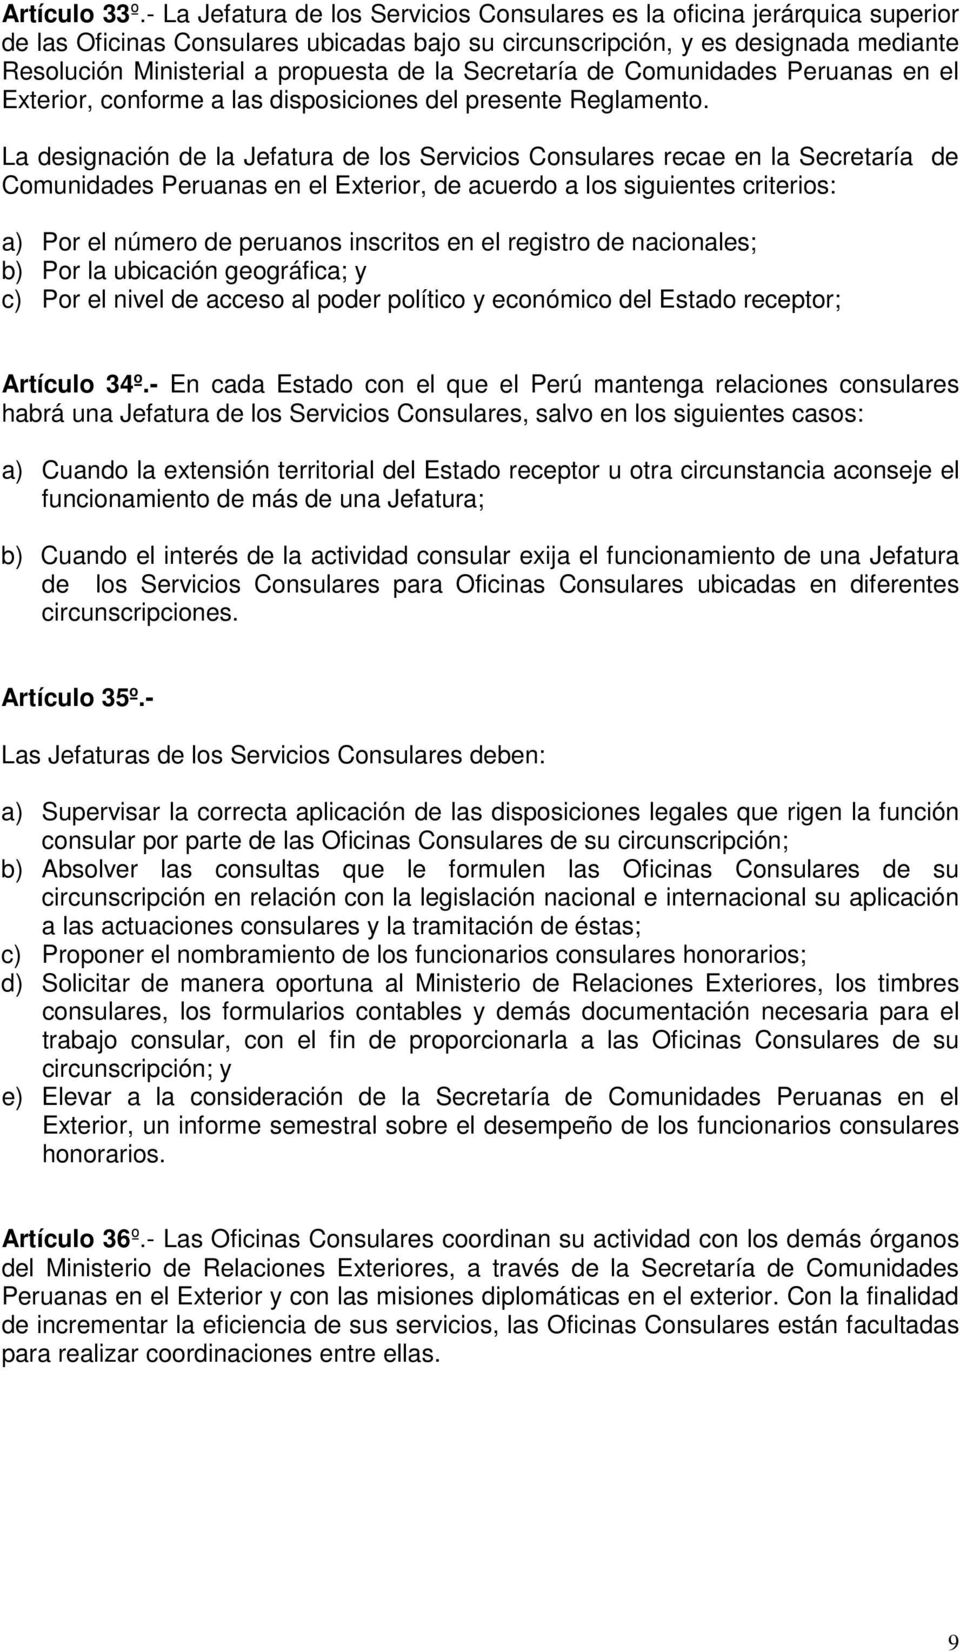 la Secretaría de Comunidades Peruanas en el Exterior, conforme a las disposiciones del presente Reglamento.